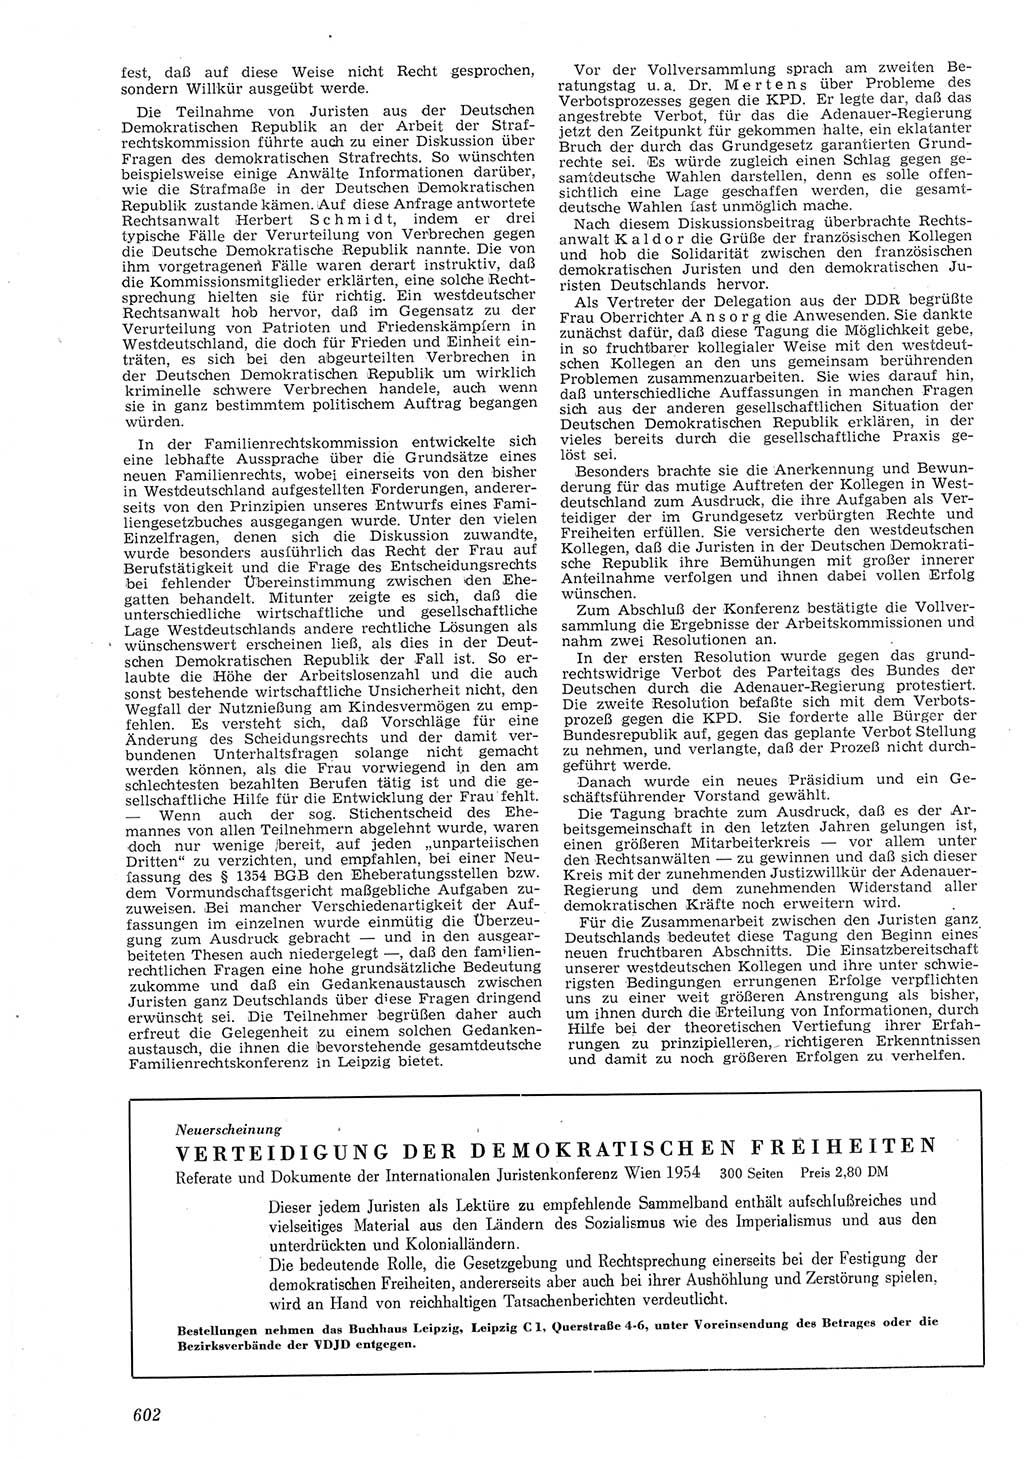 Neue Justiz (NJ), Zeitschrift für Recht und Rechtswissenschaft [Deutsche Demokratische Republik (DDR)], 8. Jahrgang 1954, Seite 602 (NJ DDR 1954, S. 602)